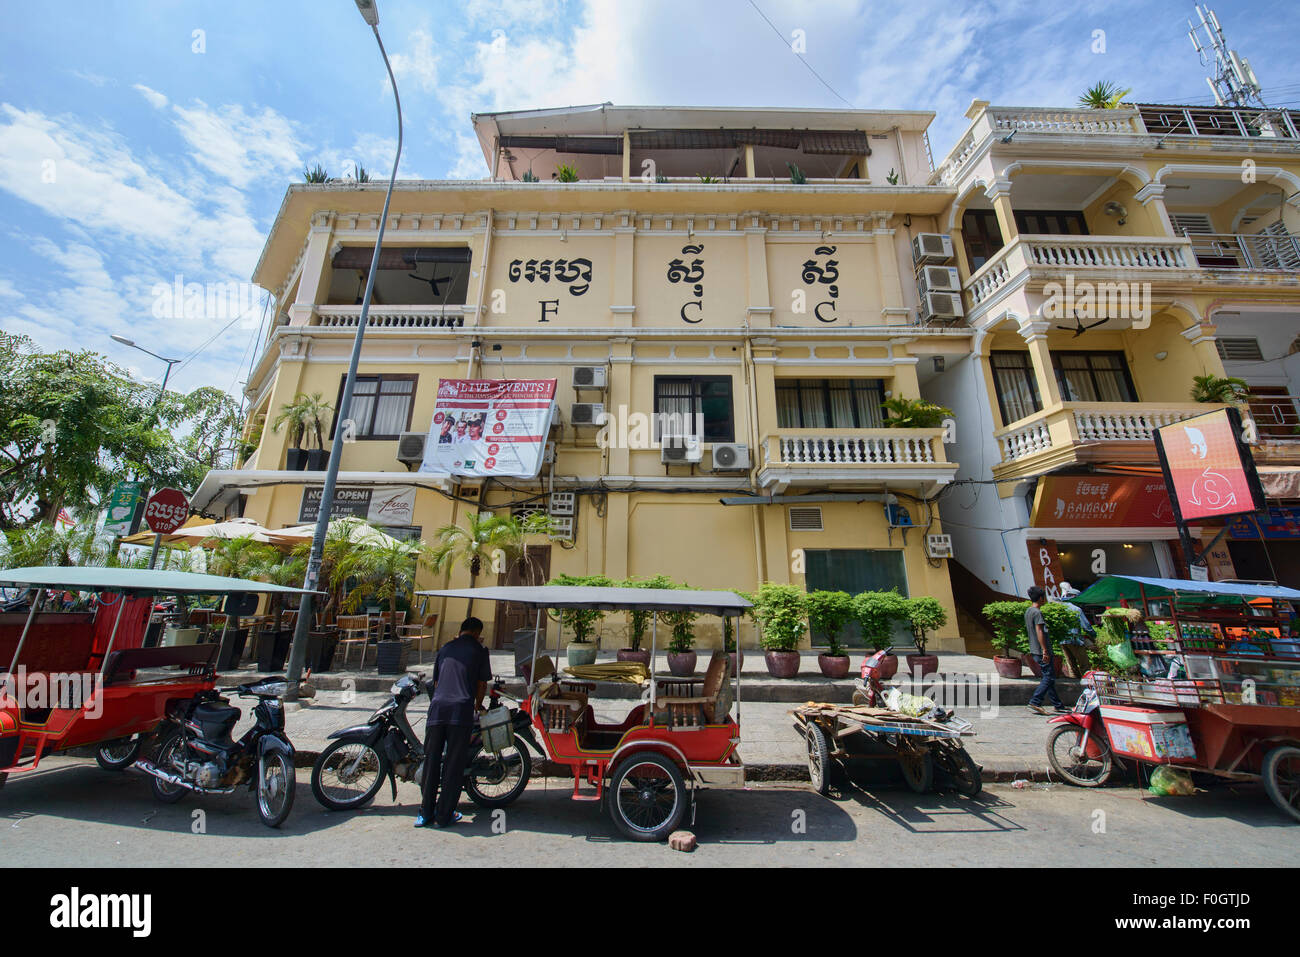 The FCC Club in Phnom Penh, Cambodia Stock Photo